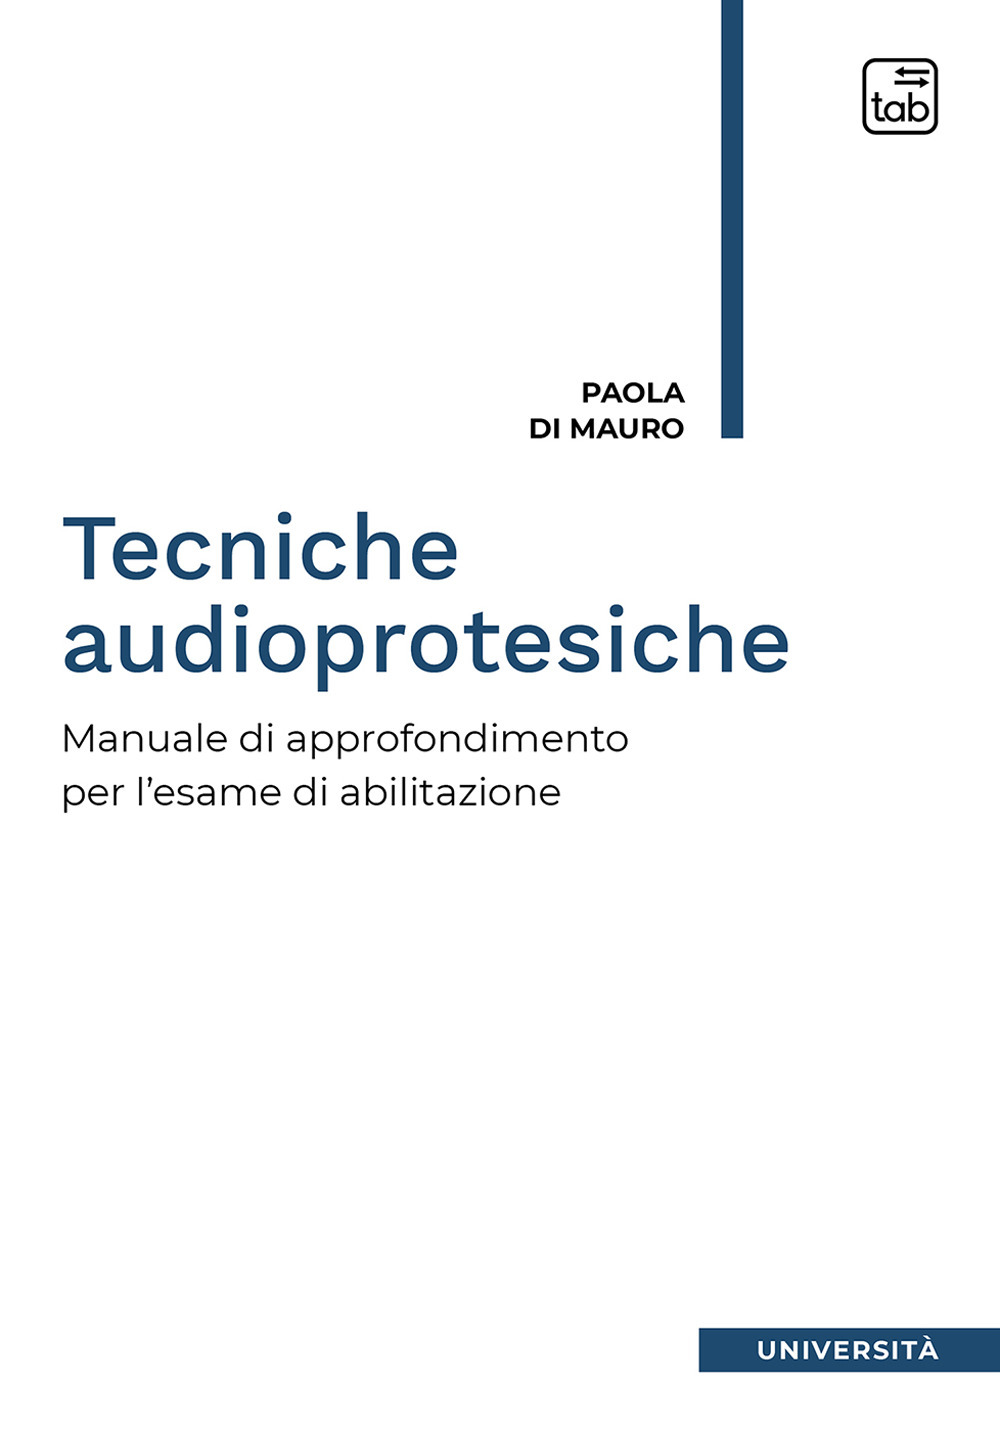 Tecniche audioprotesiche. Manuale di approfondimento per l'esame di abilitazione